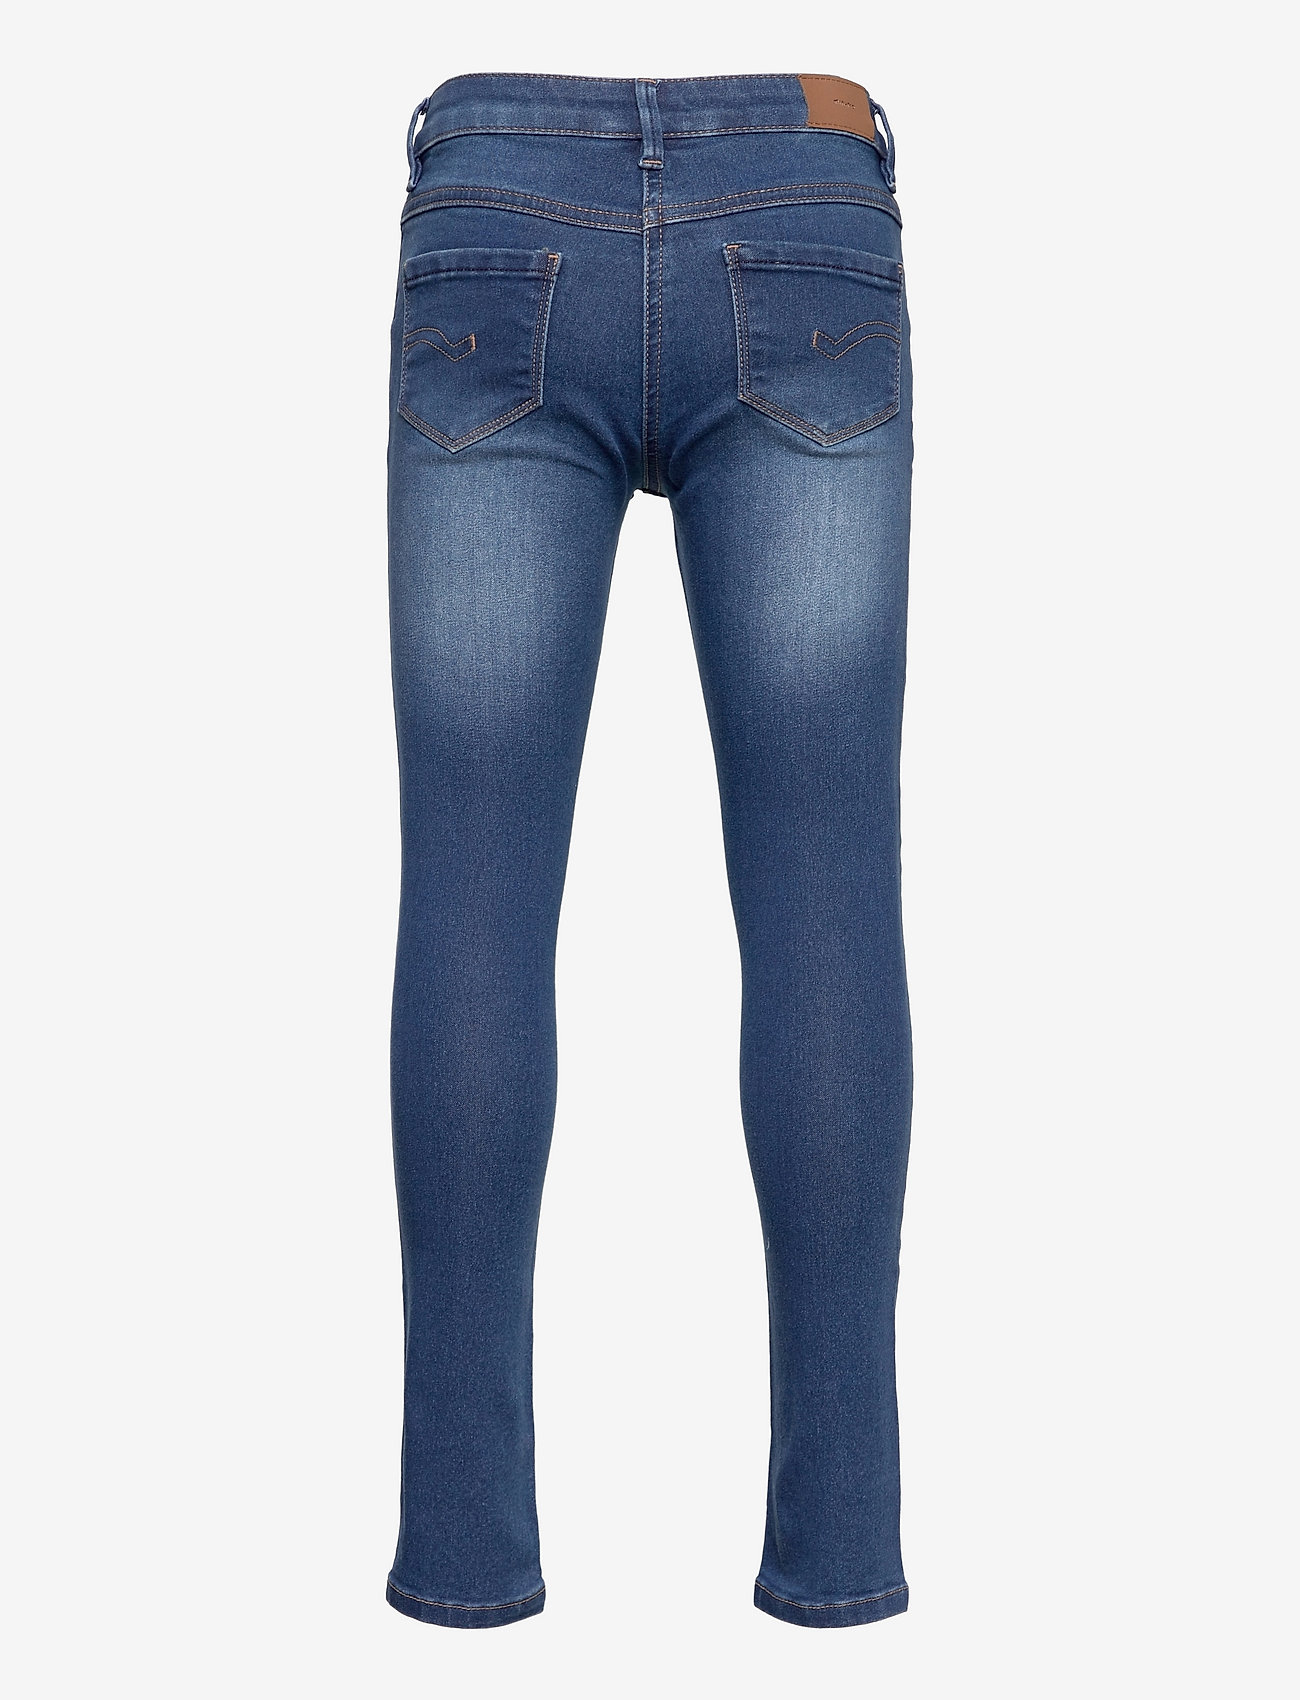 Minymo - Jeans power stretch slim fit - skinny jeans - denim - 1